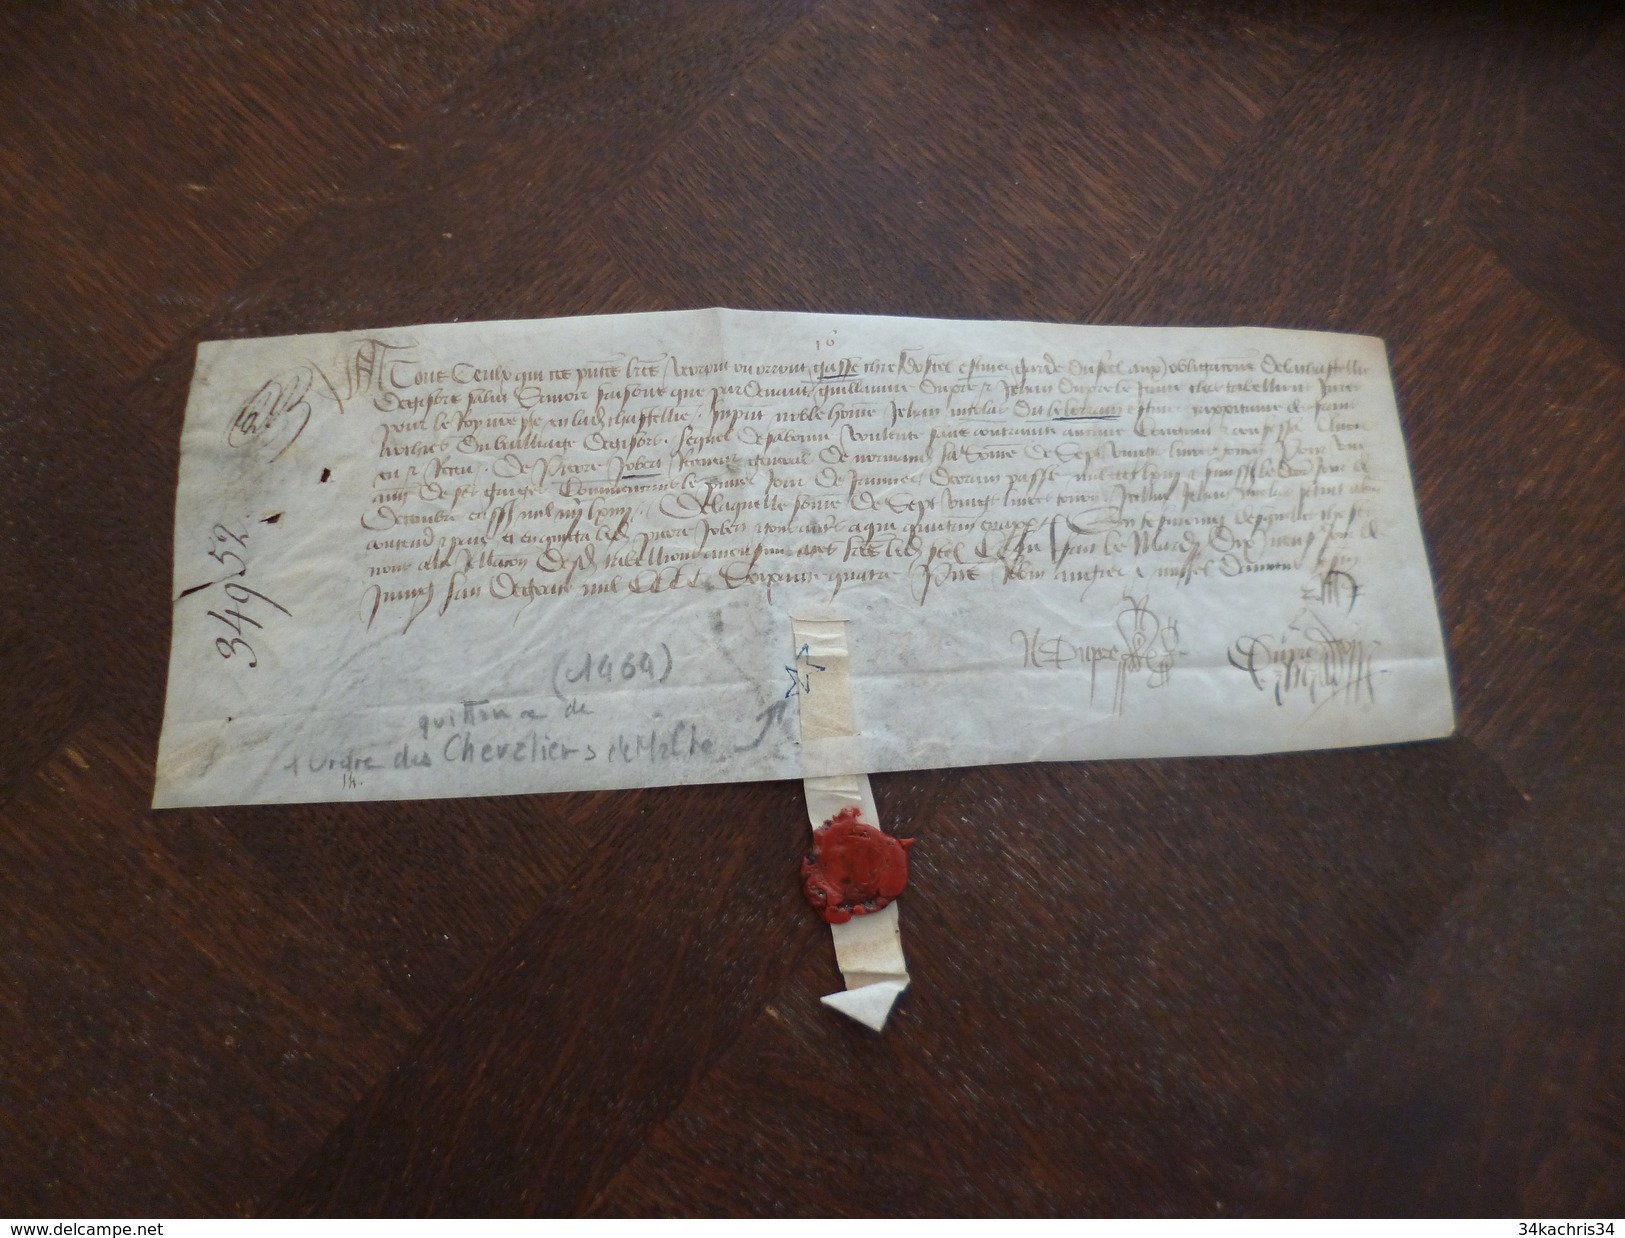 Quittance 1464 Avec Sceau Chevalier Ordre De Malte Gasse Nicolas Dit Le Lorrain Robert Manuscrit Sur Velin - Manuscritos